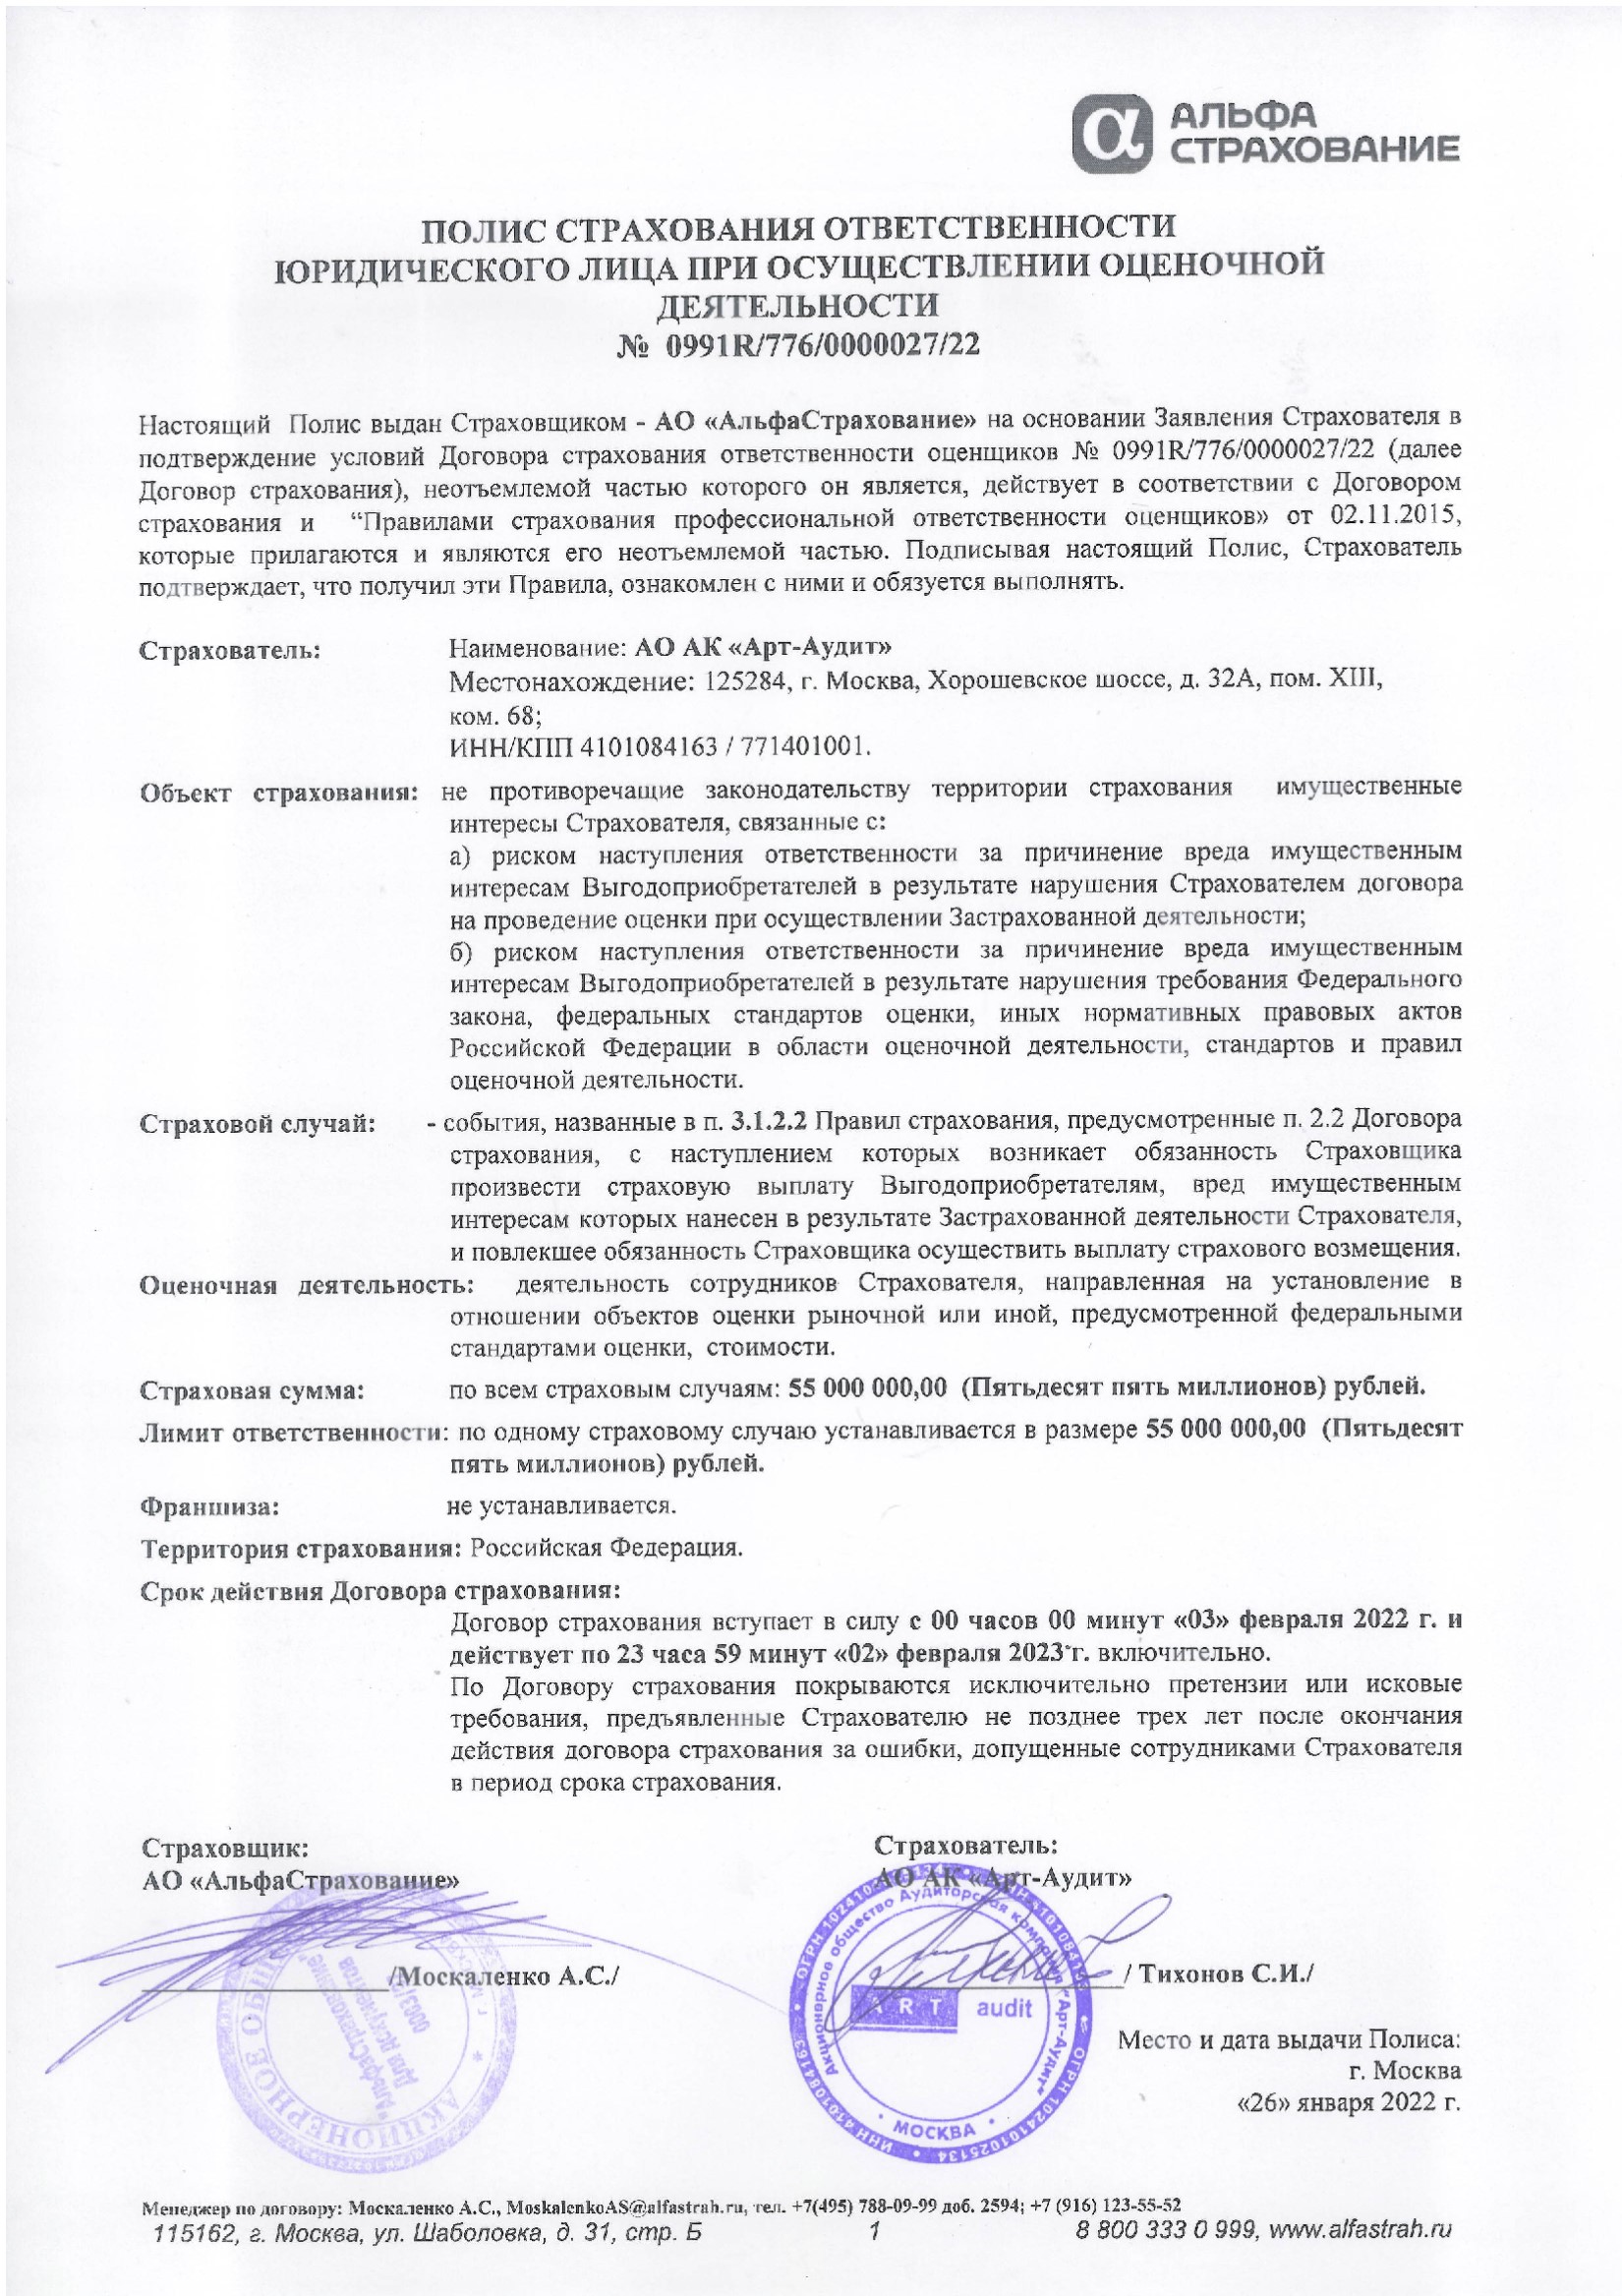 АРТ-АУДИТ Полис страхования по оценочной деятельности от 26.01.2022